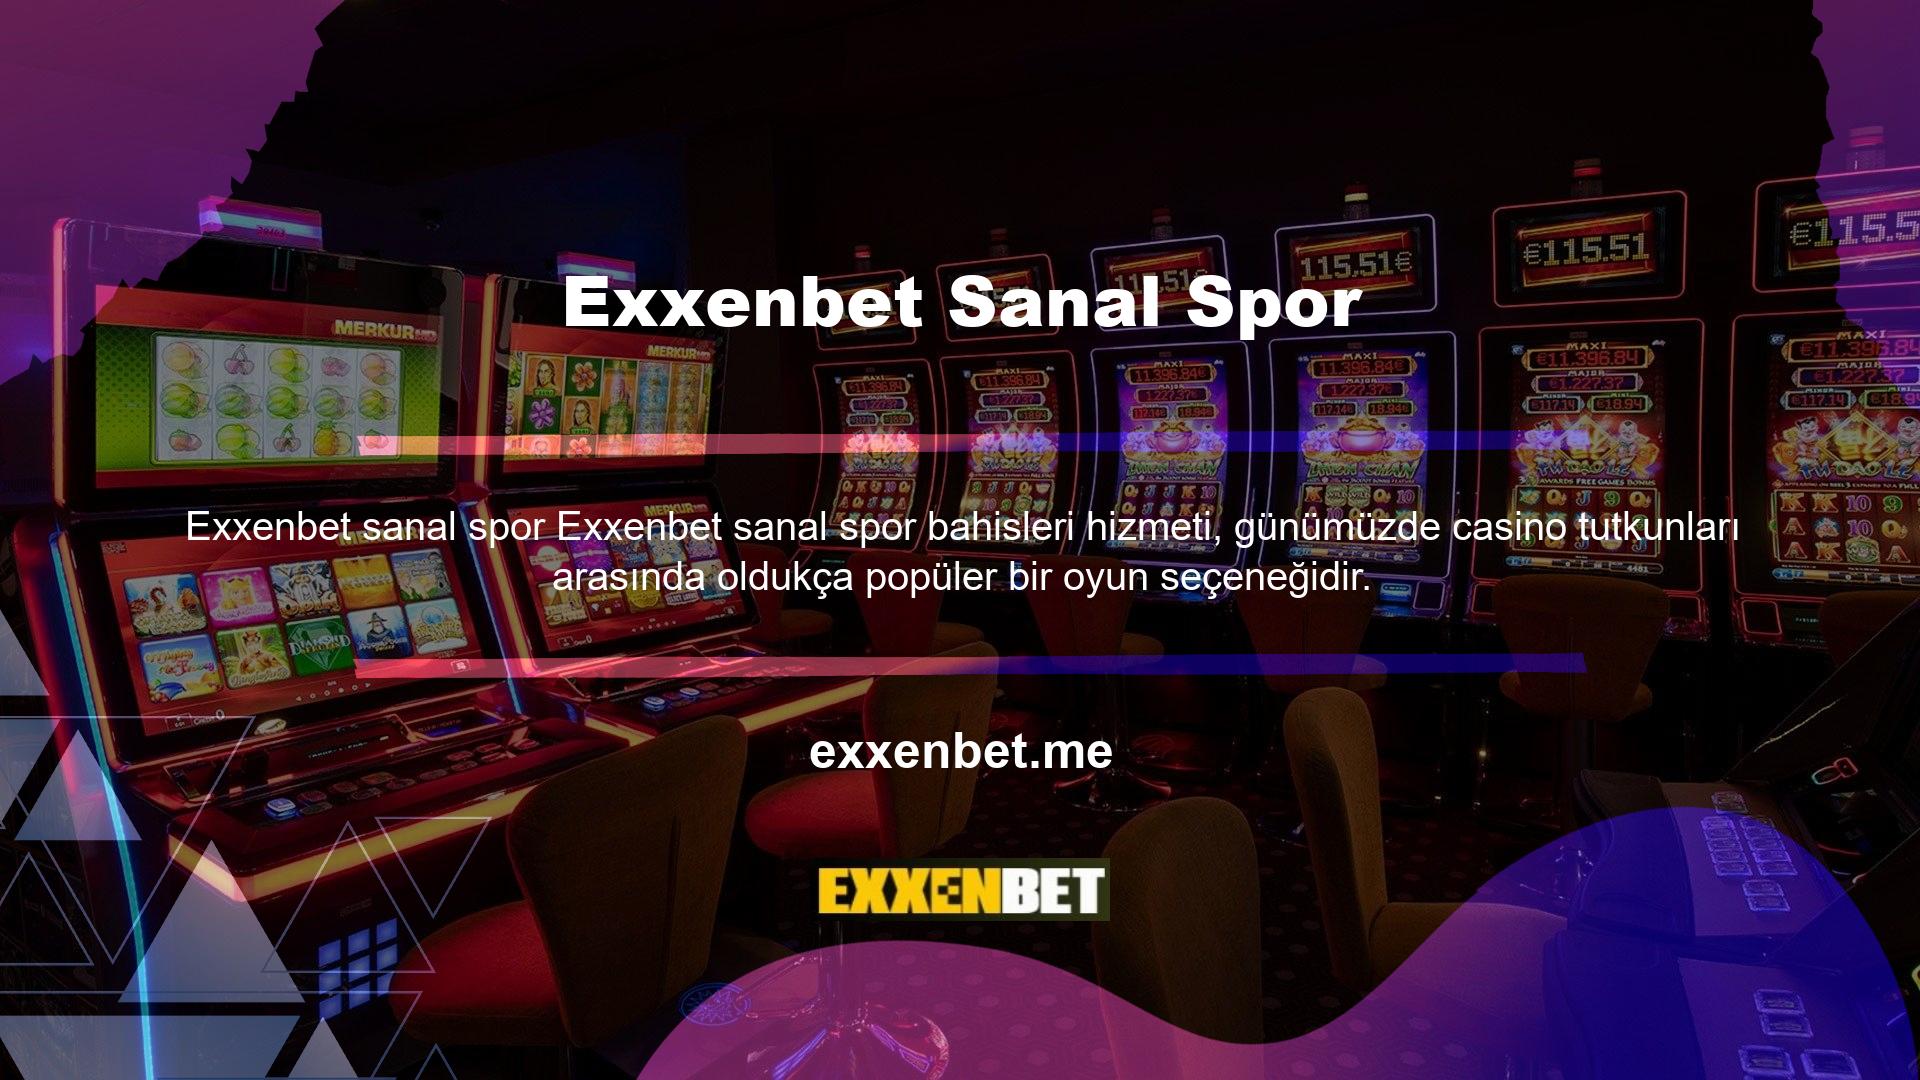 Canlı bahislere benzer şekilde sanal spor bahisleri de Exxenbet üyelerine cömert bonuslar sunmaktadır